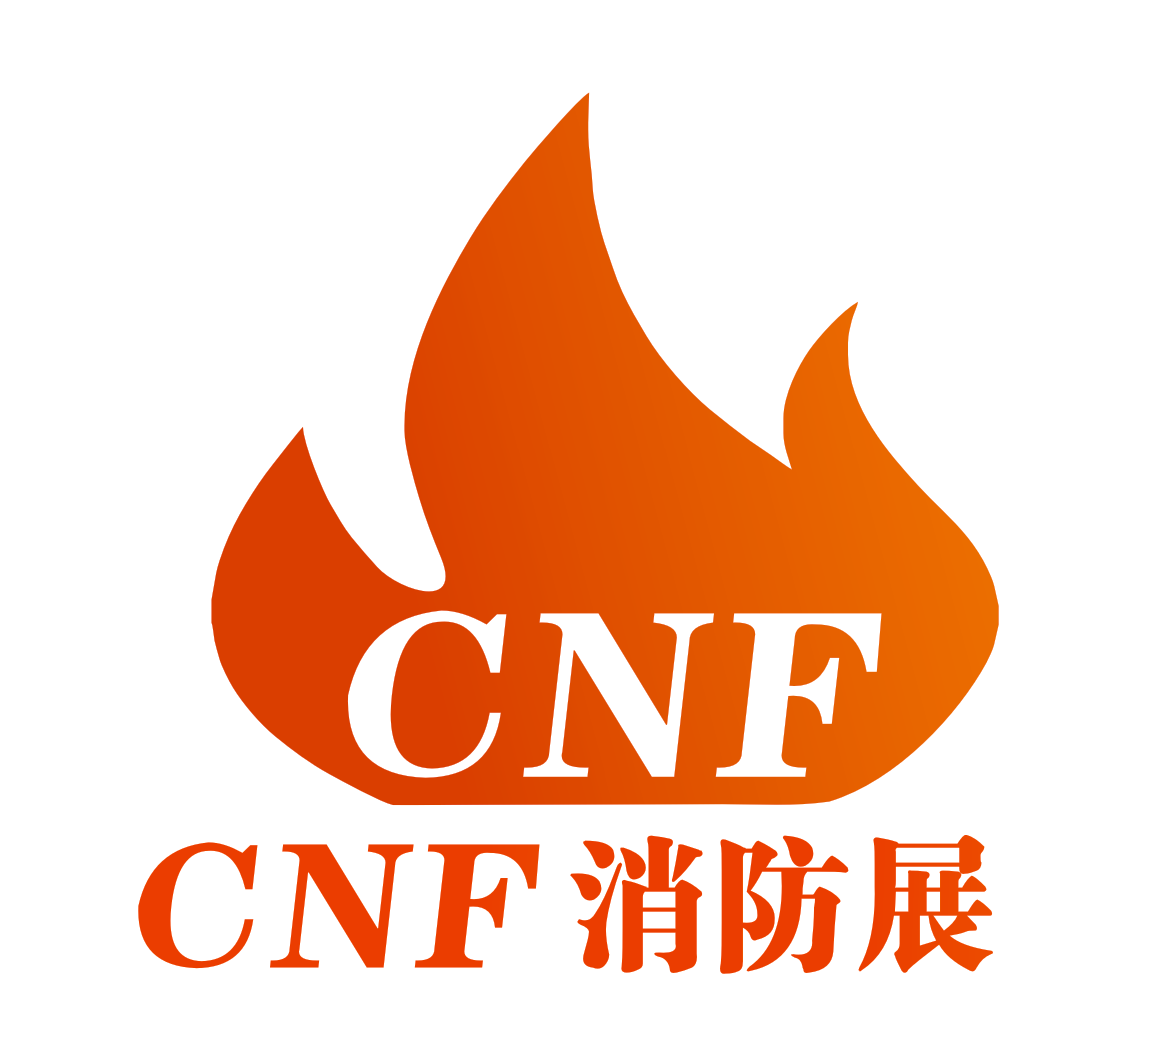 CNF南京国际消防展